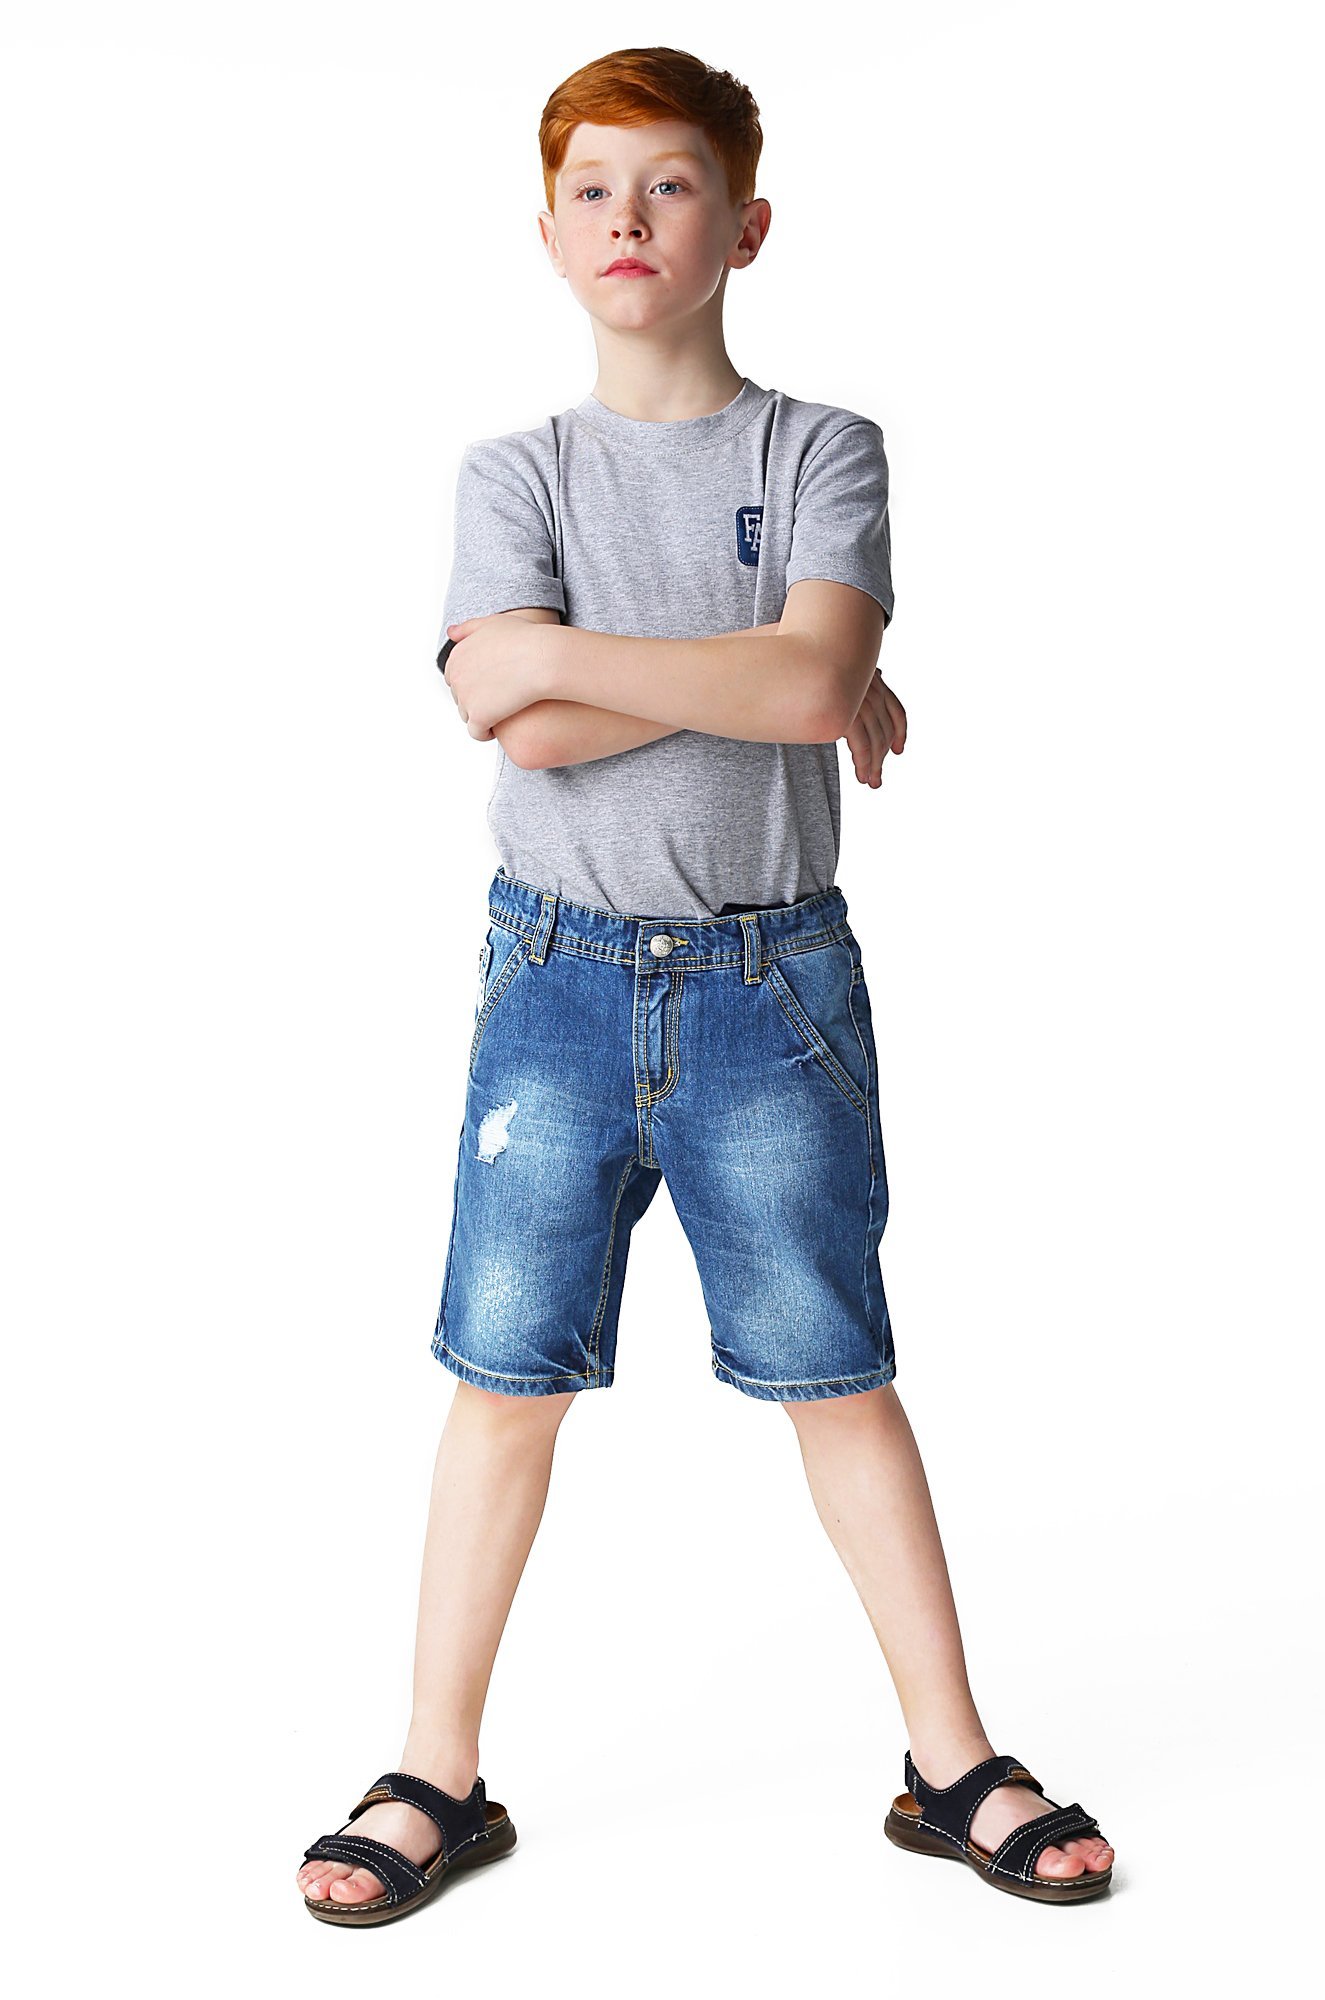 Мальчик в джинсовых шортах